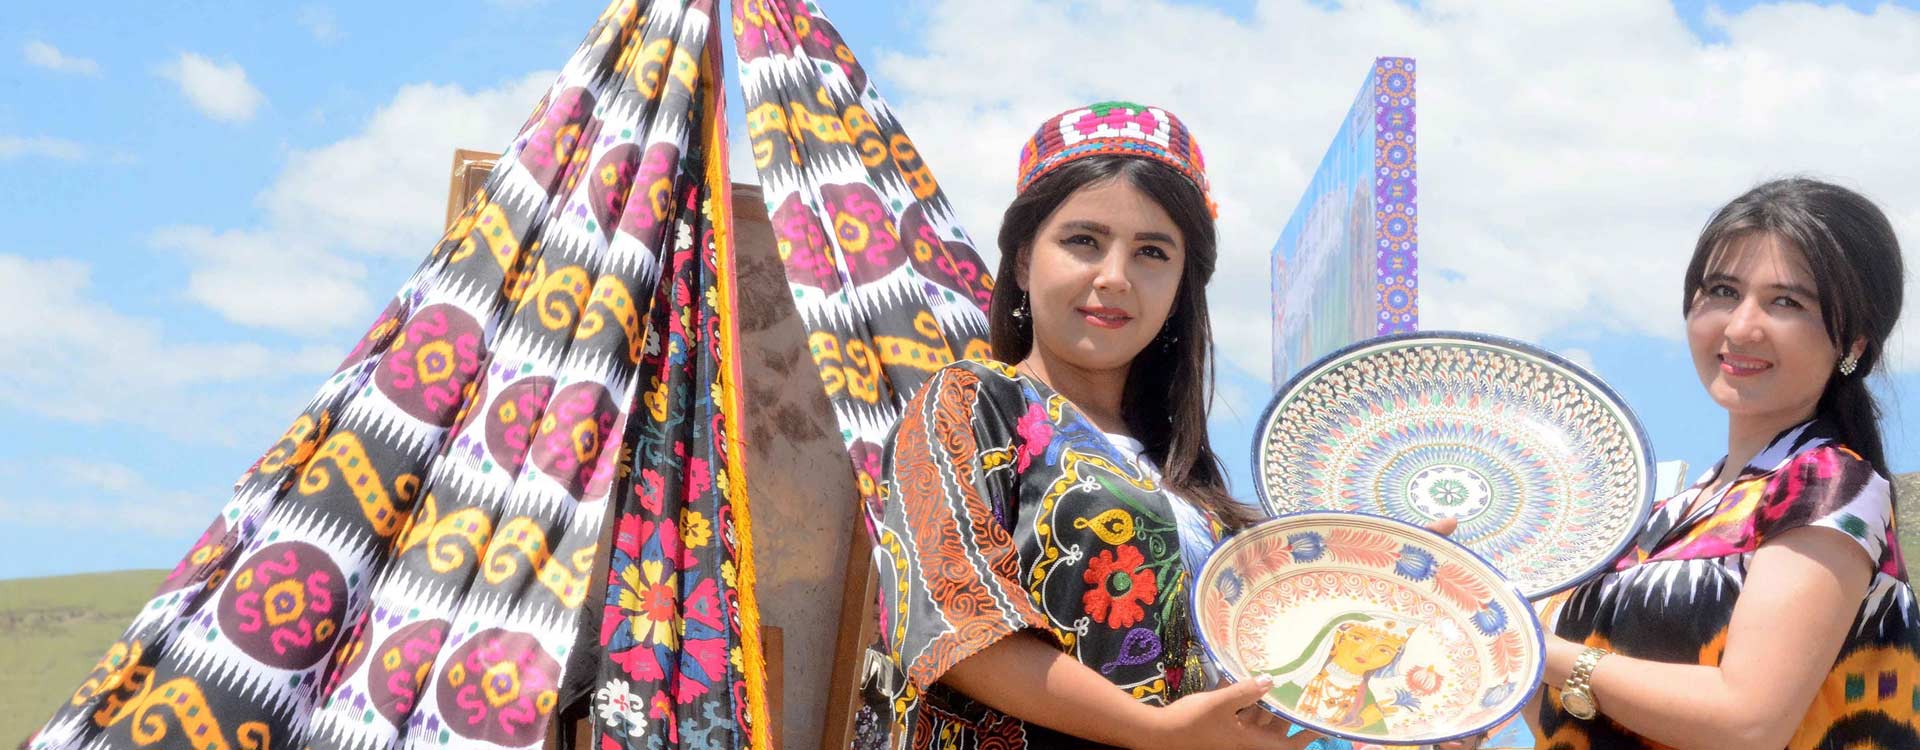 Uzbekistan Culture & Traditions